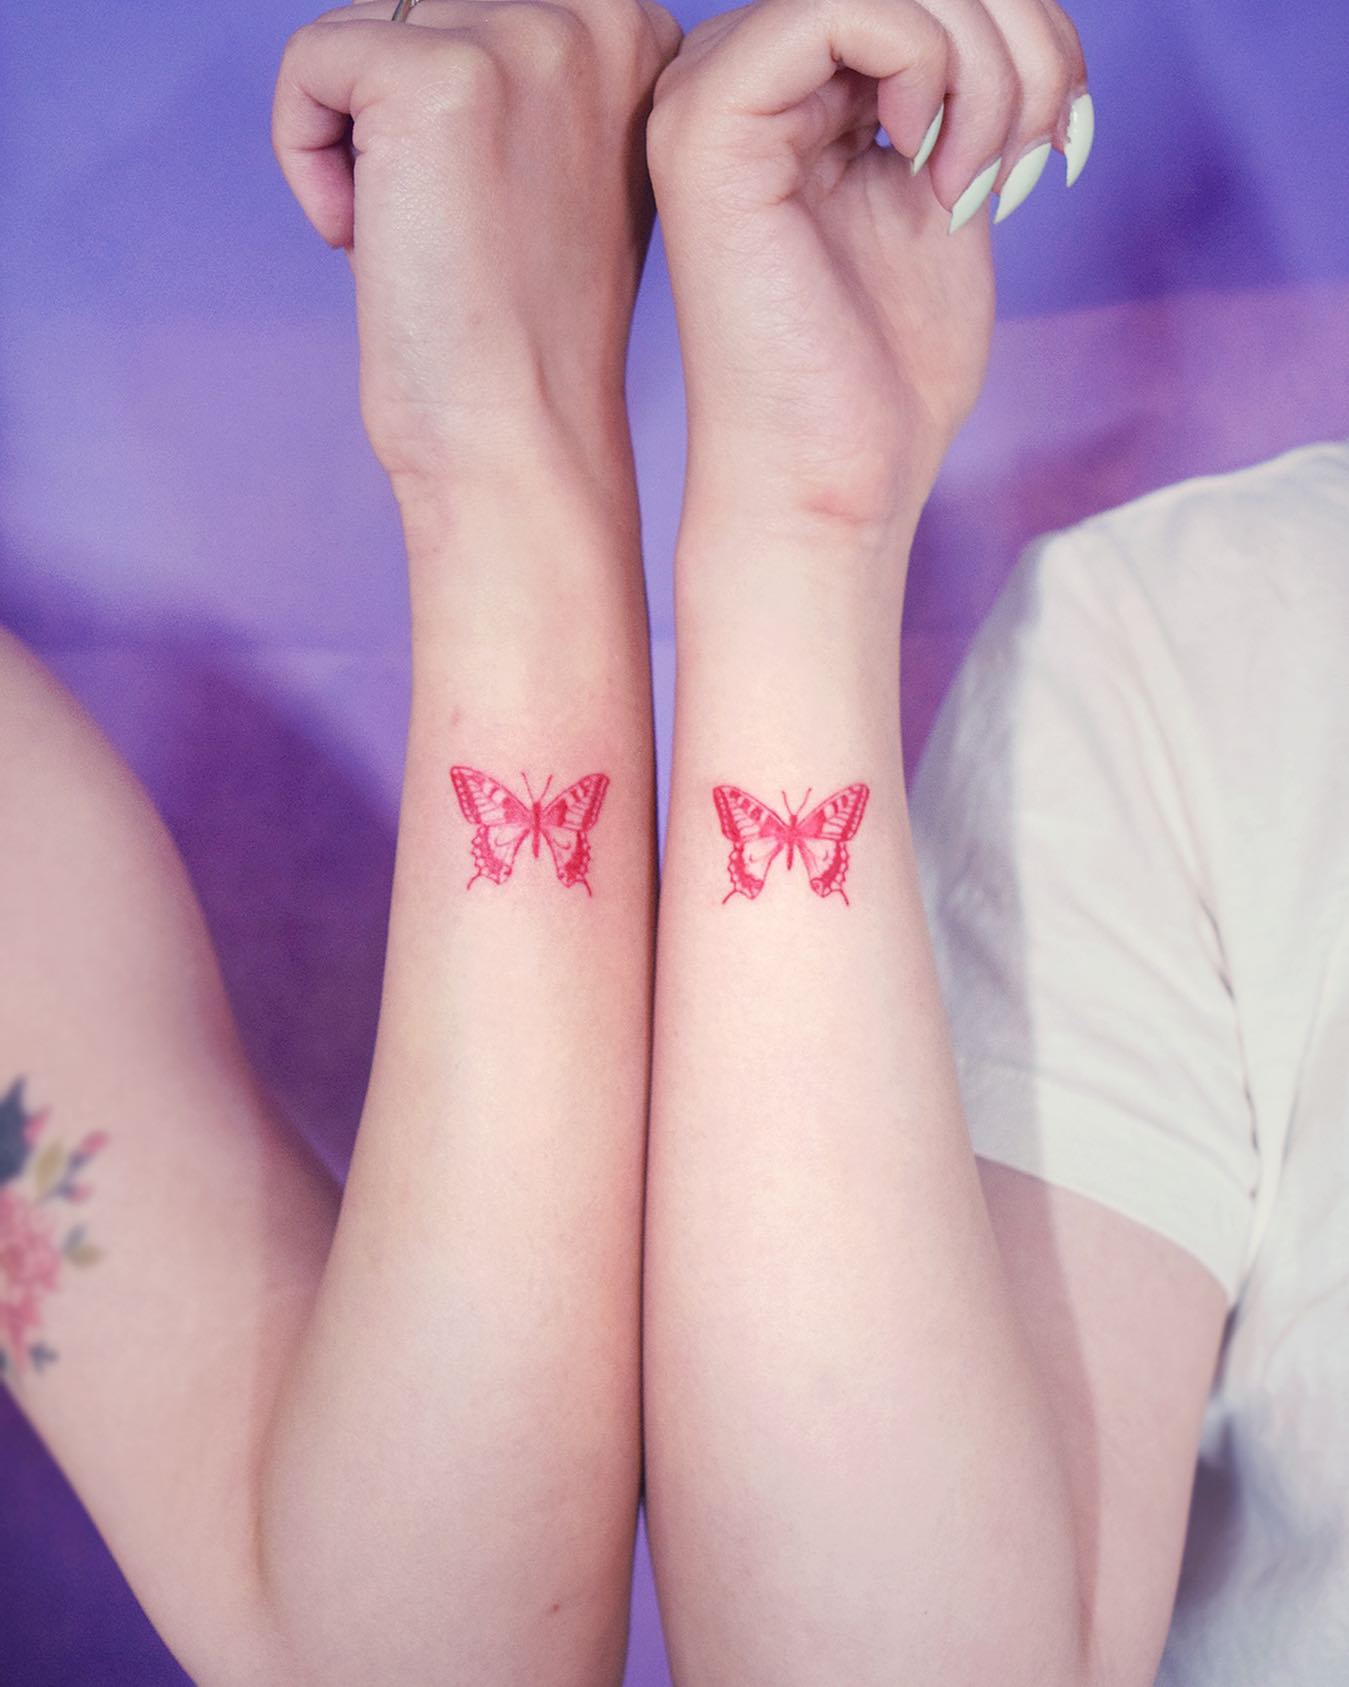 Red ink Tattoo on Dark Skin  Red ink tattoos, Mini tattoos, Simplistic  tattoos